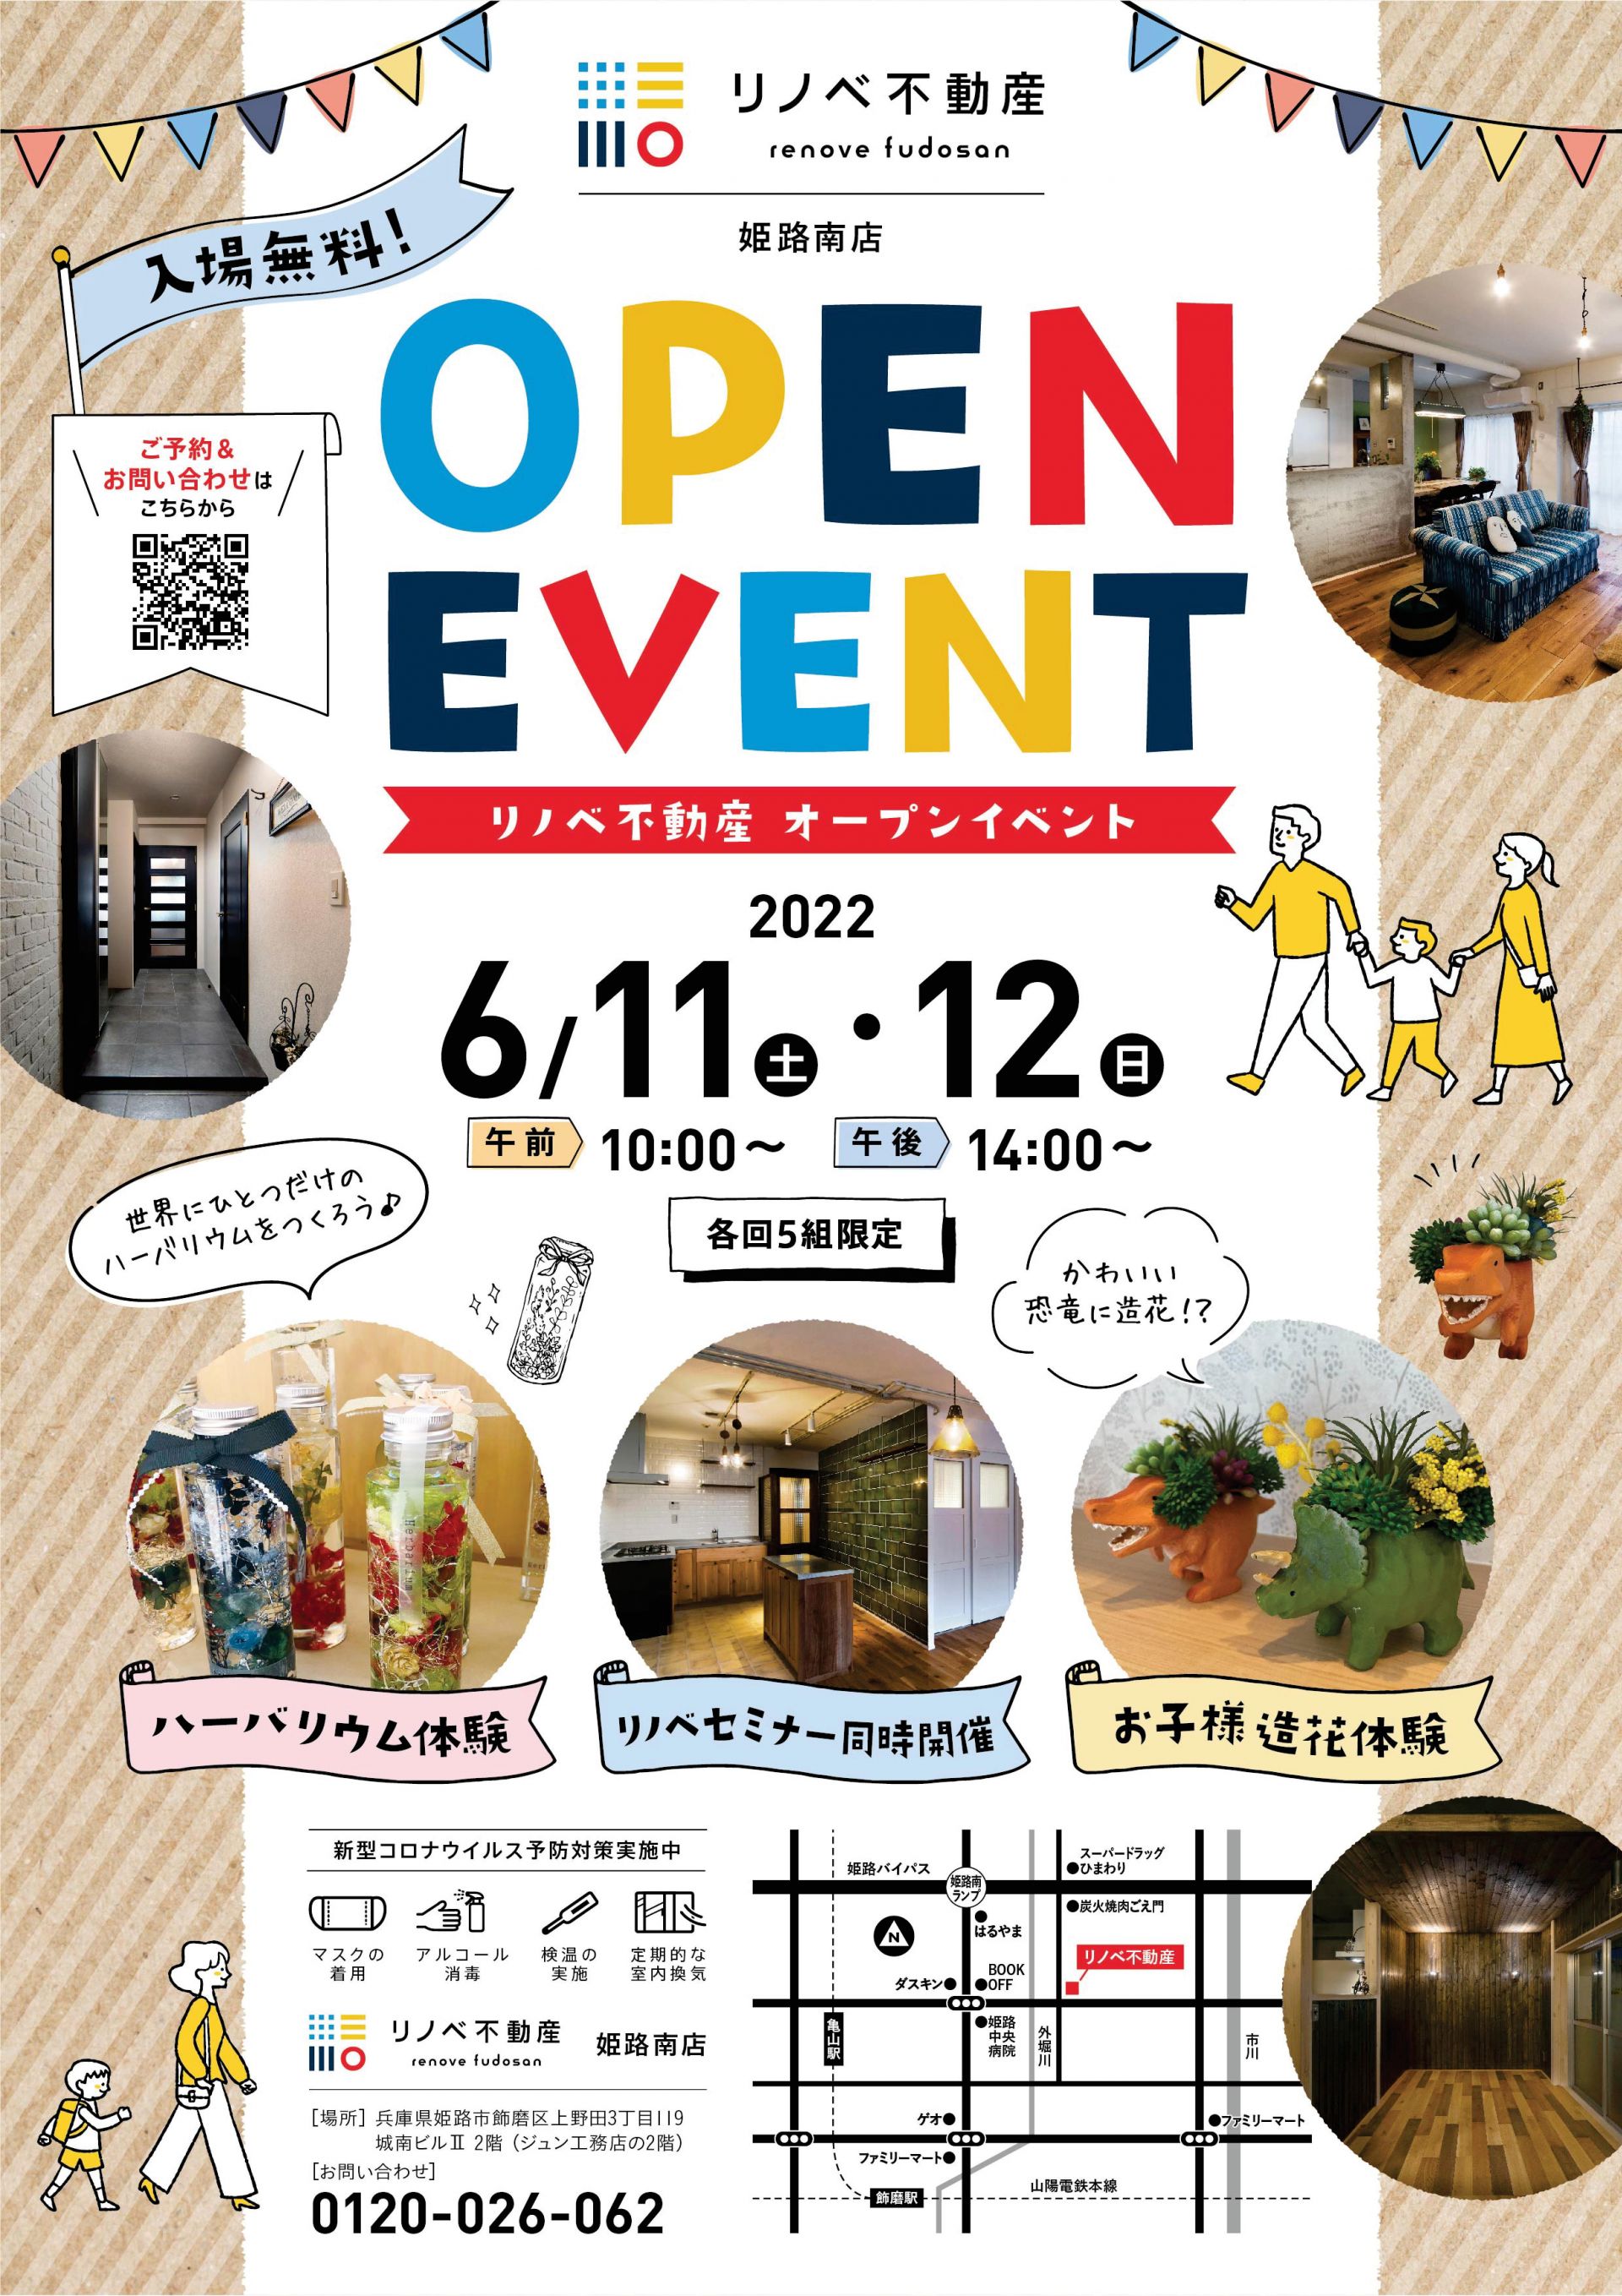 ６月姫路南店オープンイベント開催予定✨